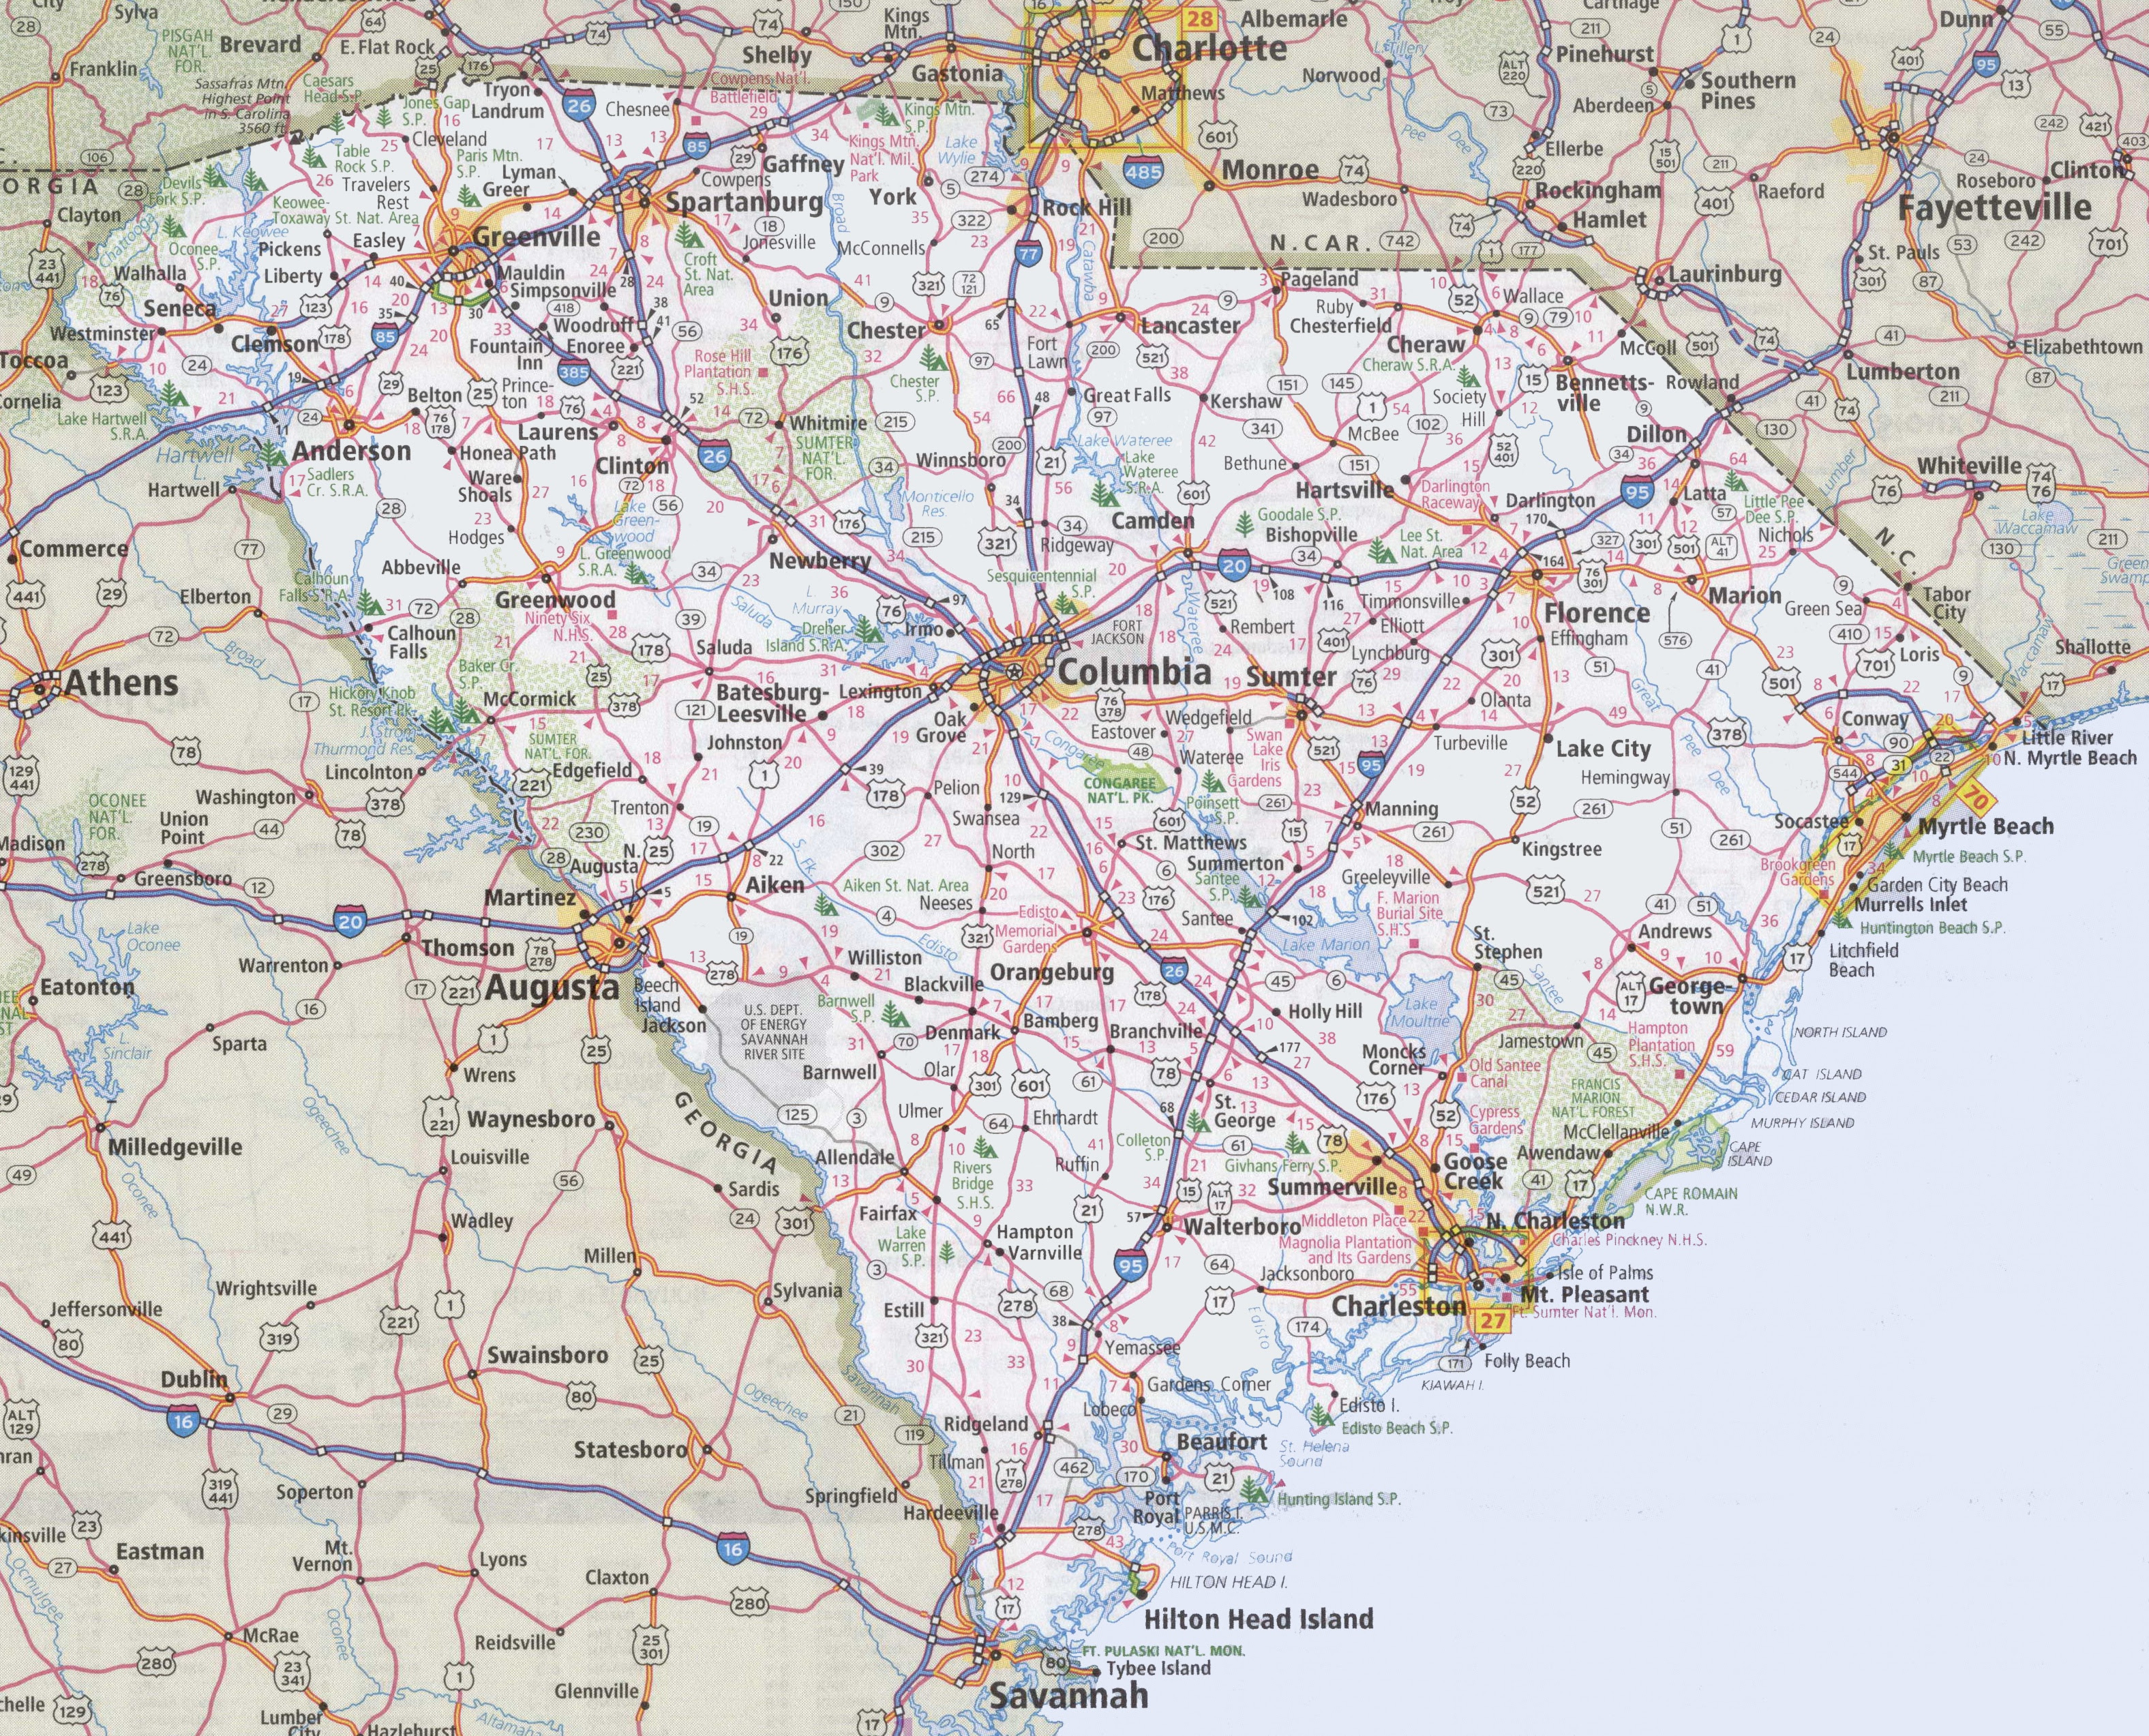 Road Map Of North Carolina And South Carolina South Carolina road map